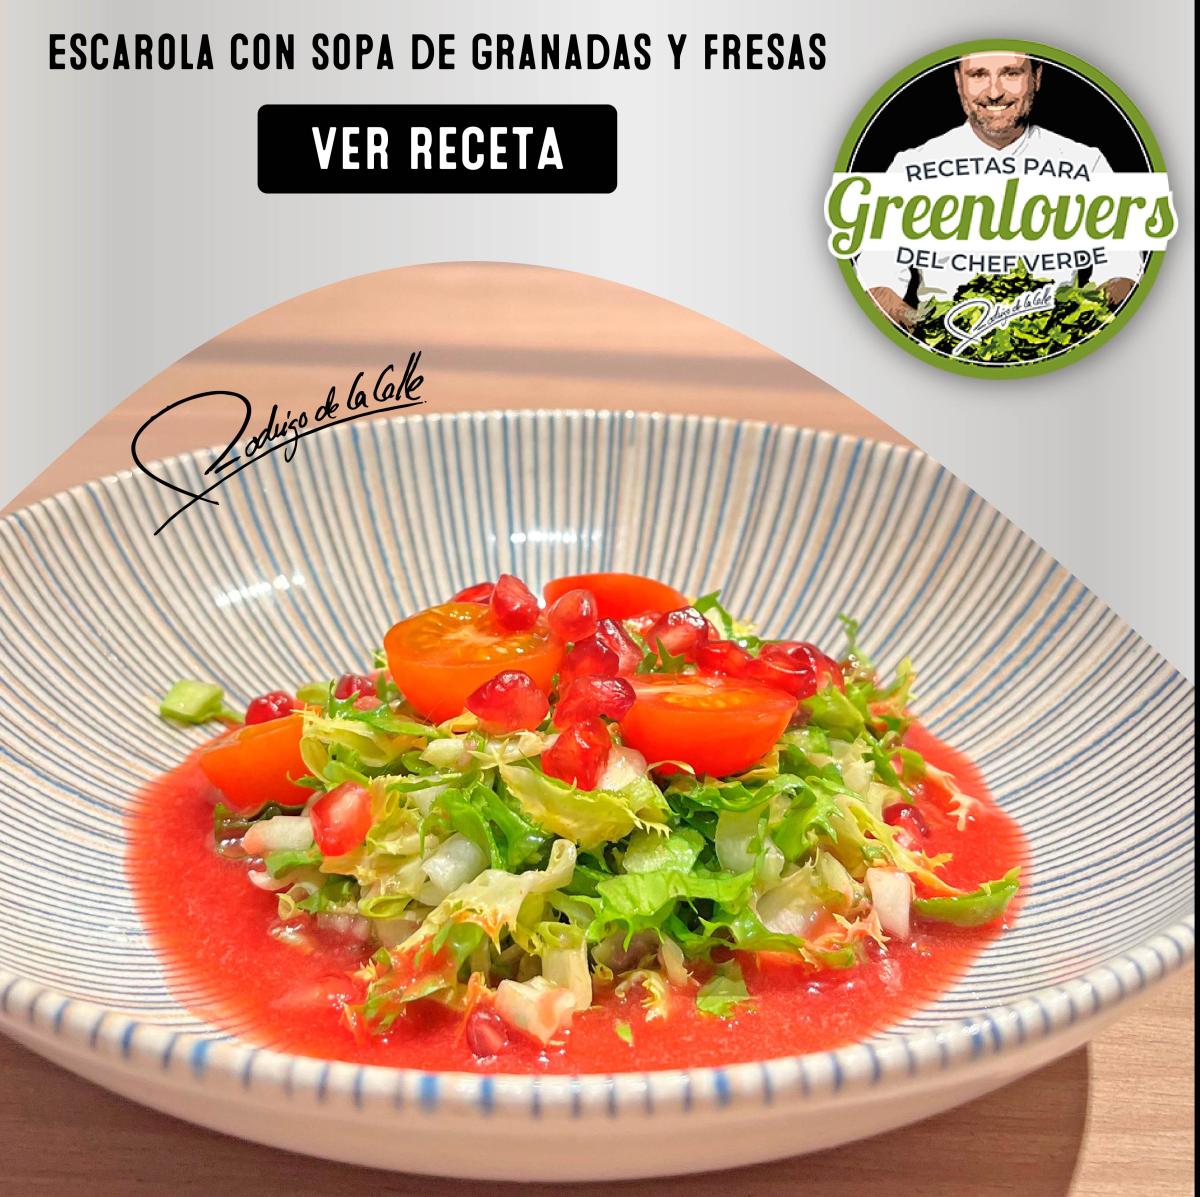 RECETA: Ensalada de escarola con sopa de granadas y fresasby Rodrigo de la Calle